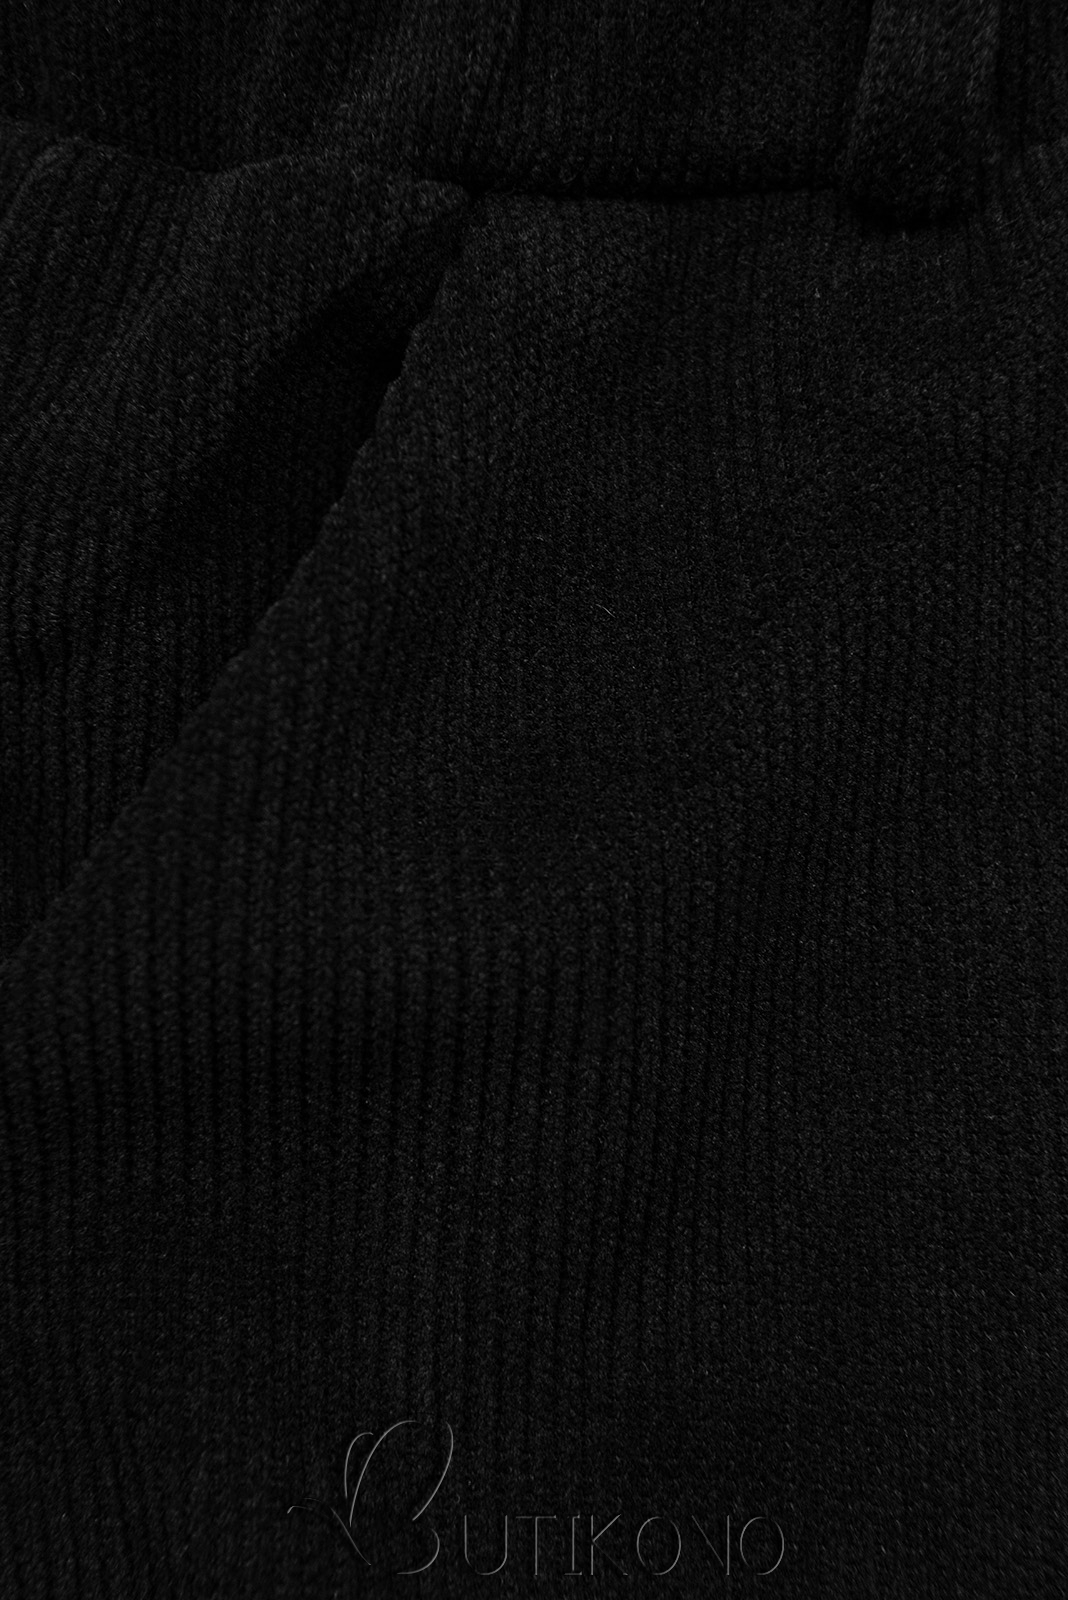 Čierne ležérne nohavice s gumou v páse